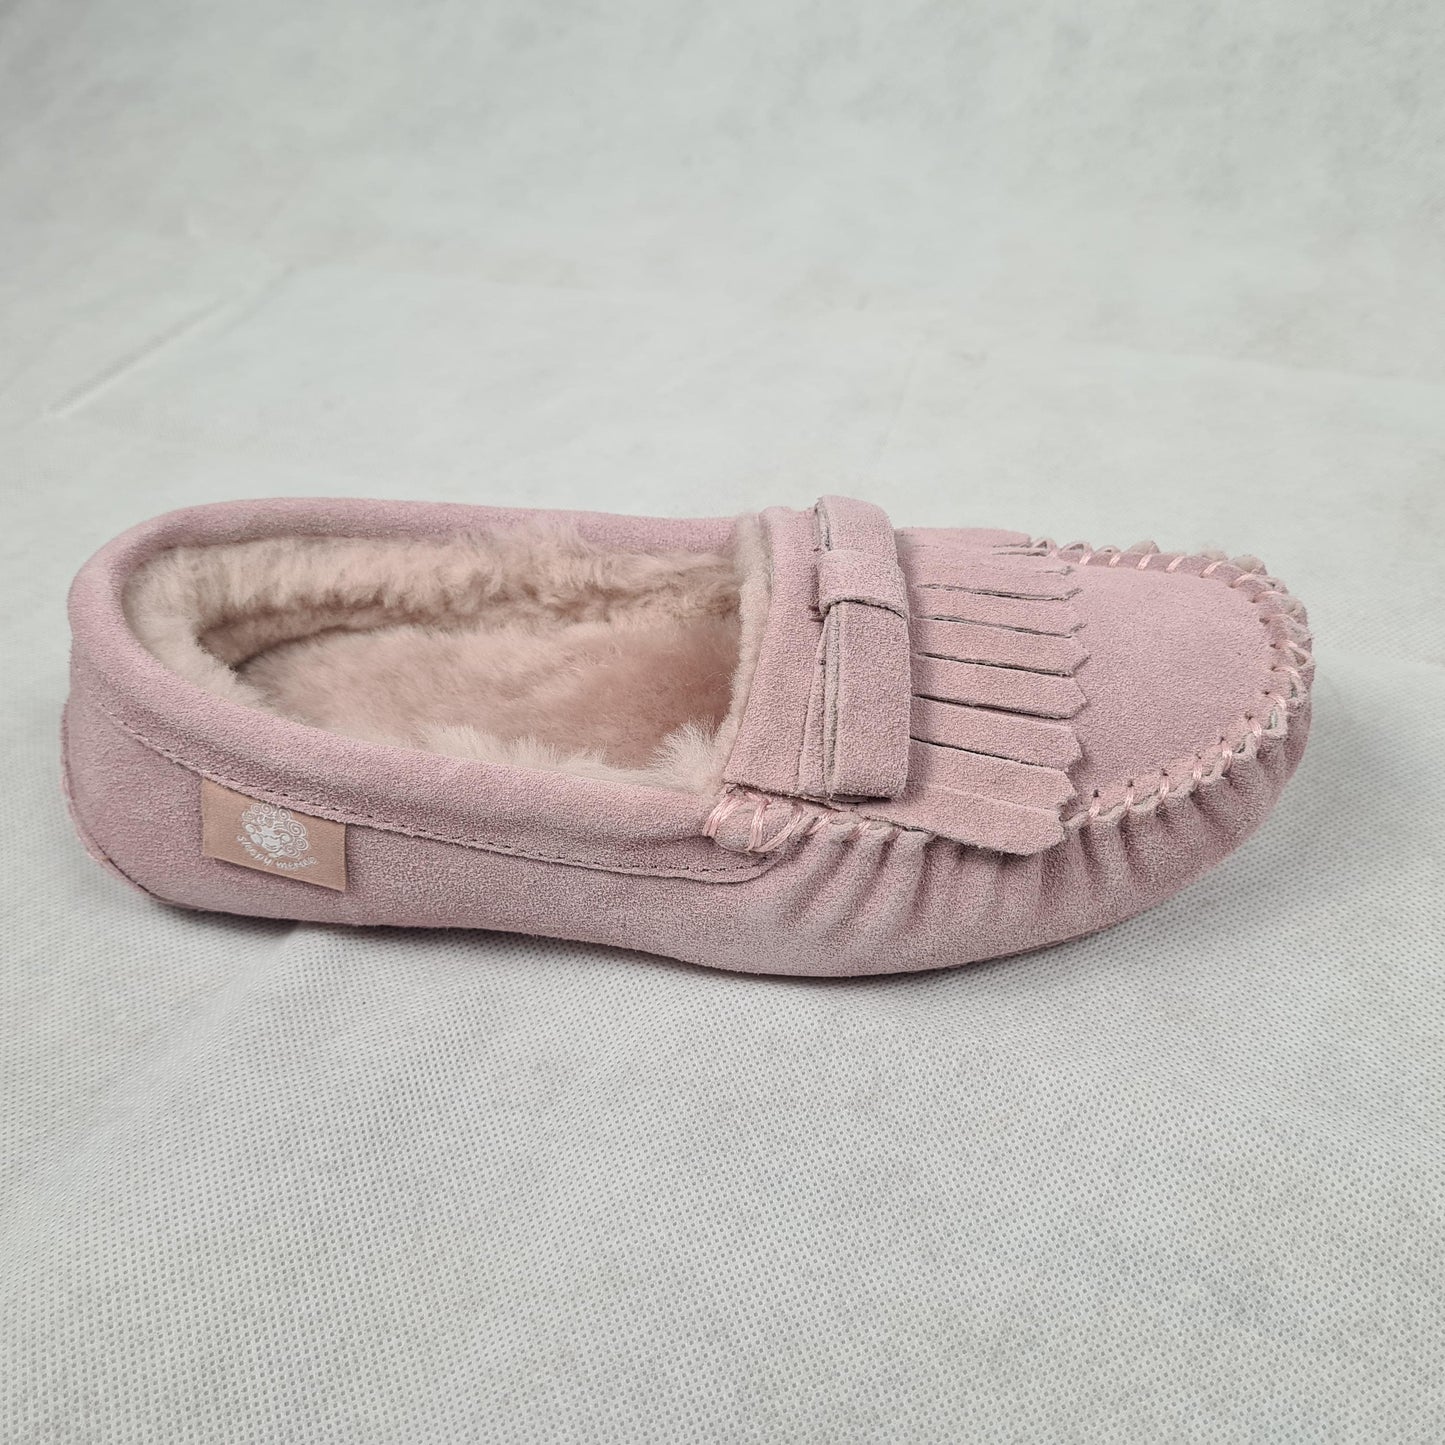 Ladies Moccasin-Australian Sheepskin Pink